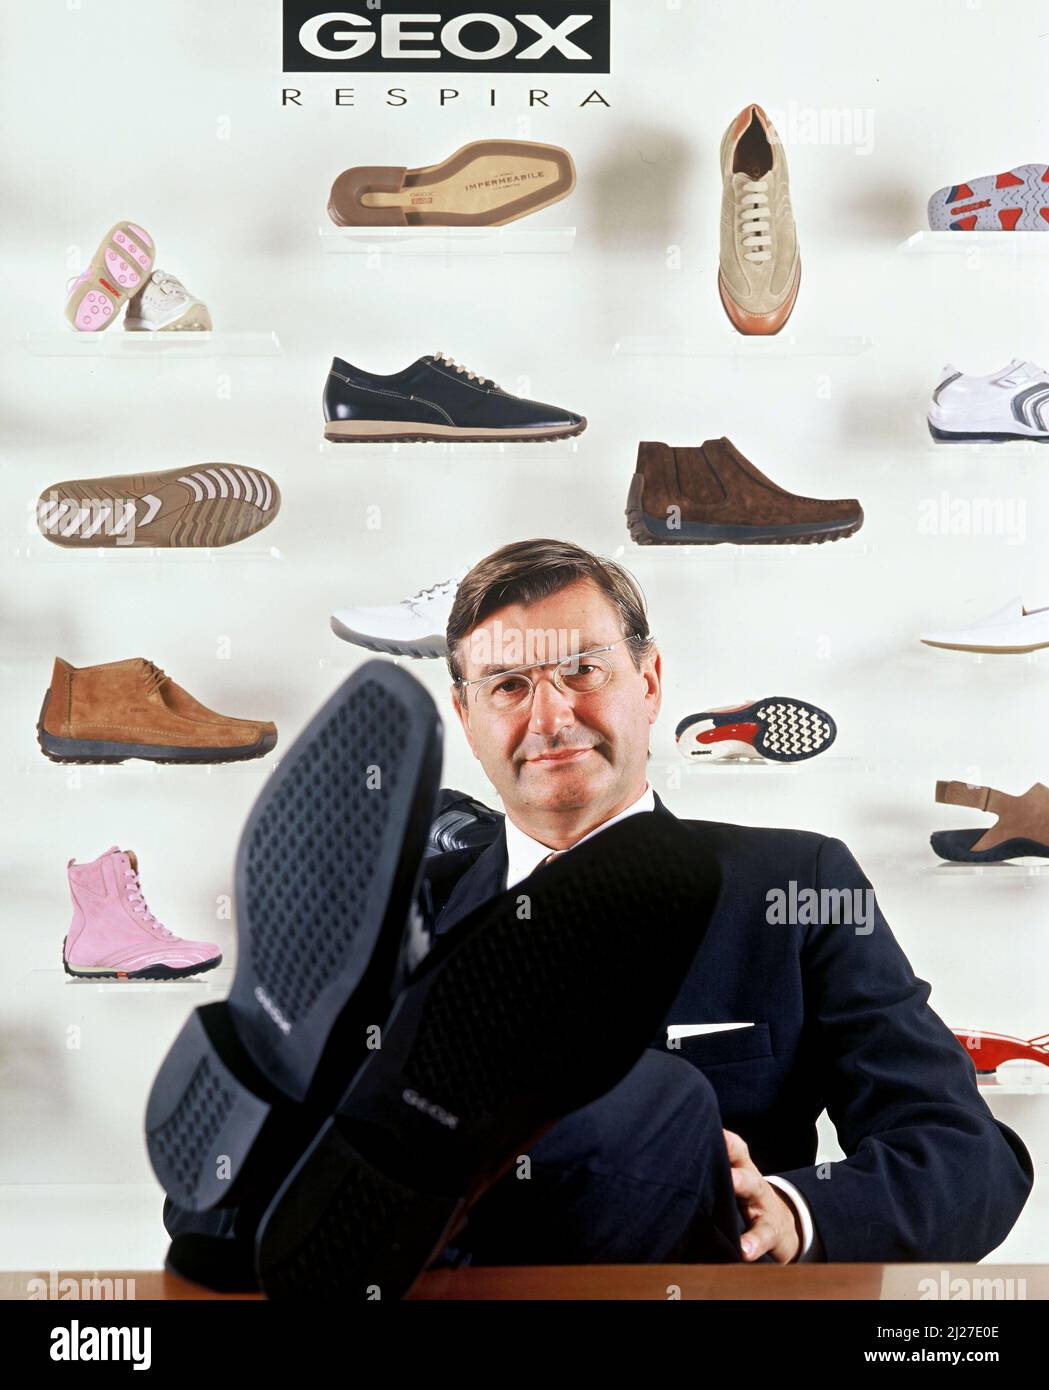 Italia, Montebelluna (Treviso) : Mario Moretti Polegato, fondatore della  Geox Spa Company. Geox è leader mondiale nel settore calzaturiero. Foto ©  Sandro mi Foto stock - Alamy